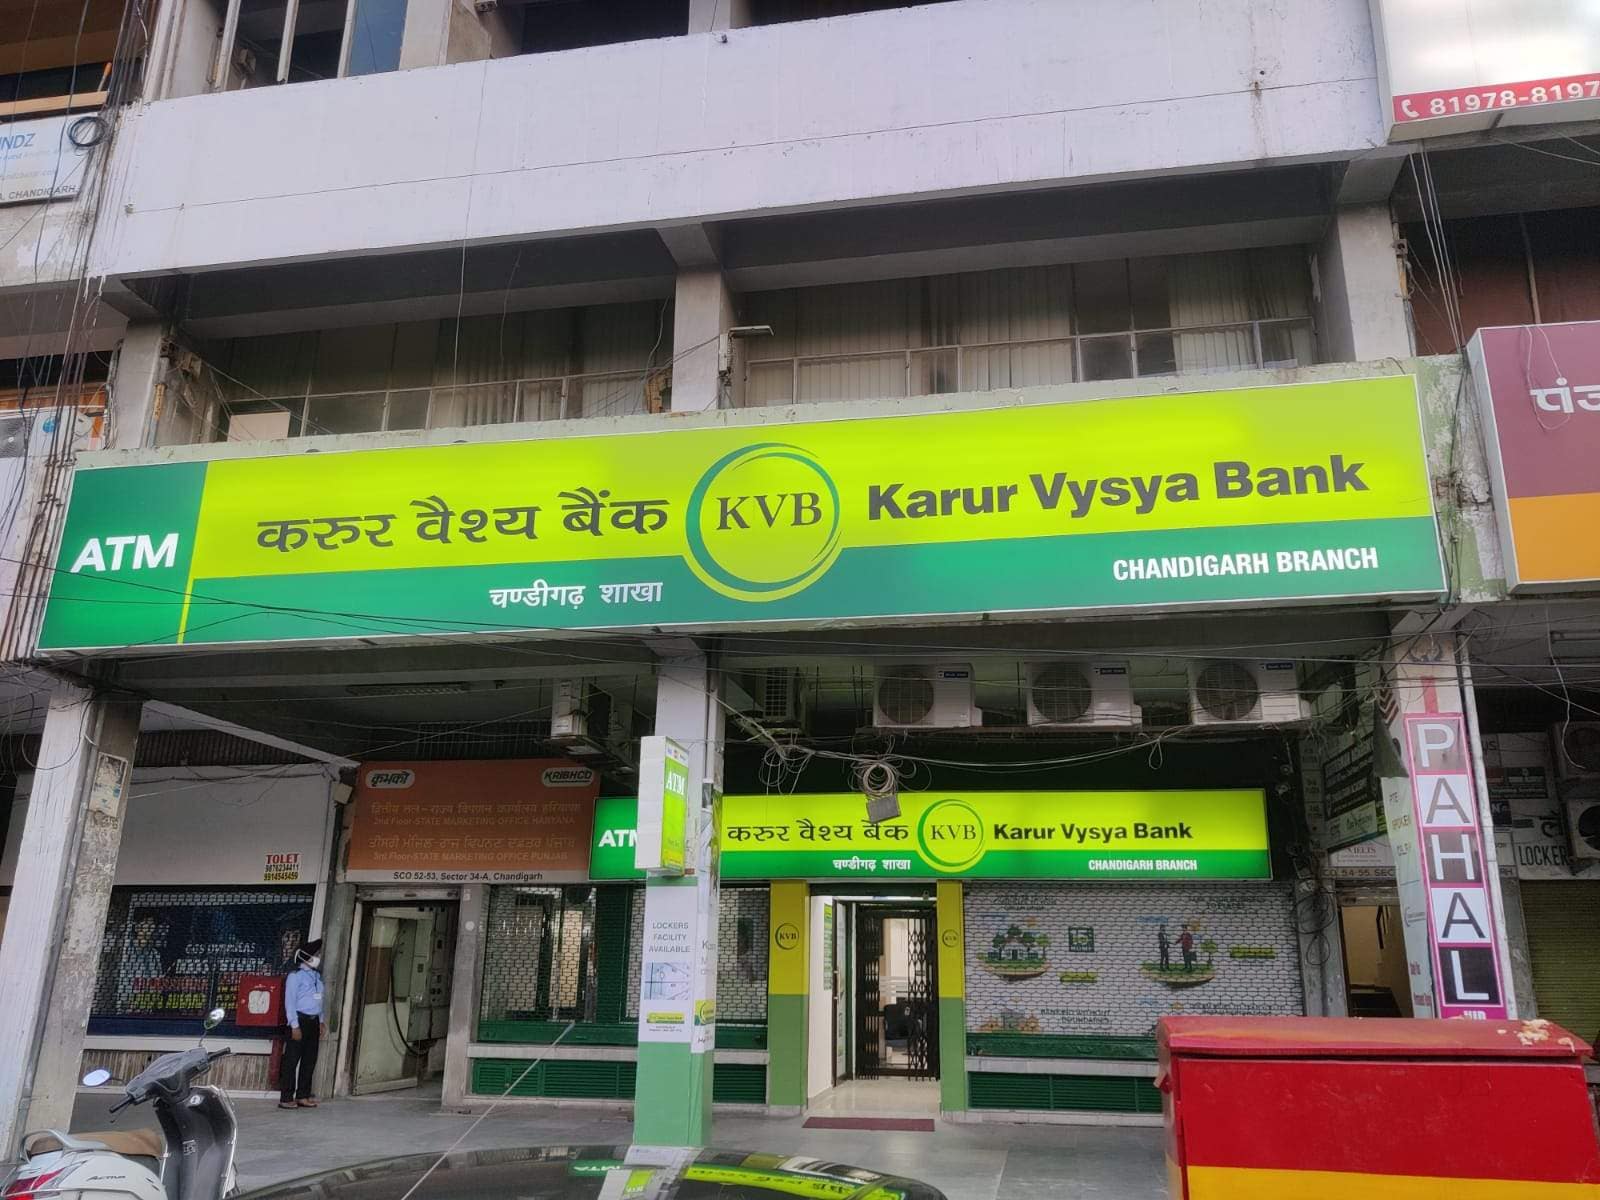 Karur Vysya Bank Ltd in Chandigarh Sector 34a,Chandigarh - Best Private  Sector Banks in Chandigarh - Justdial